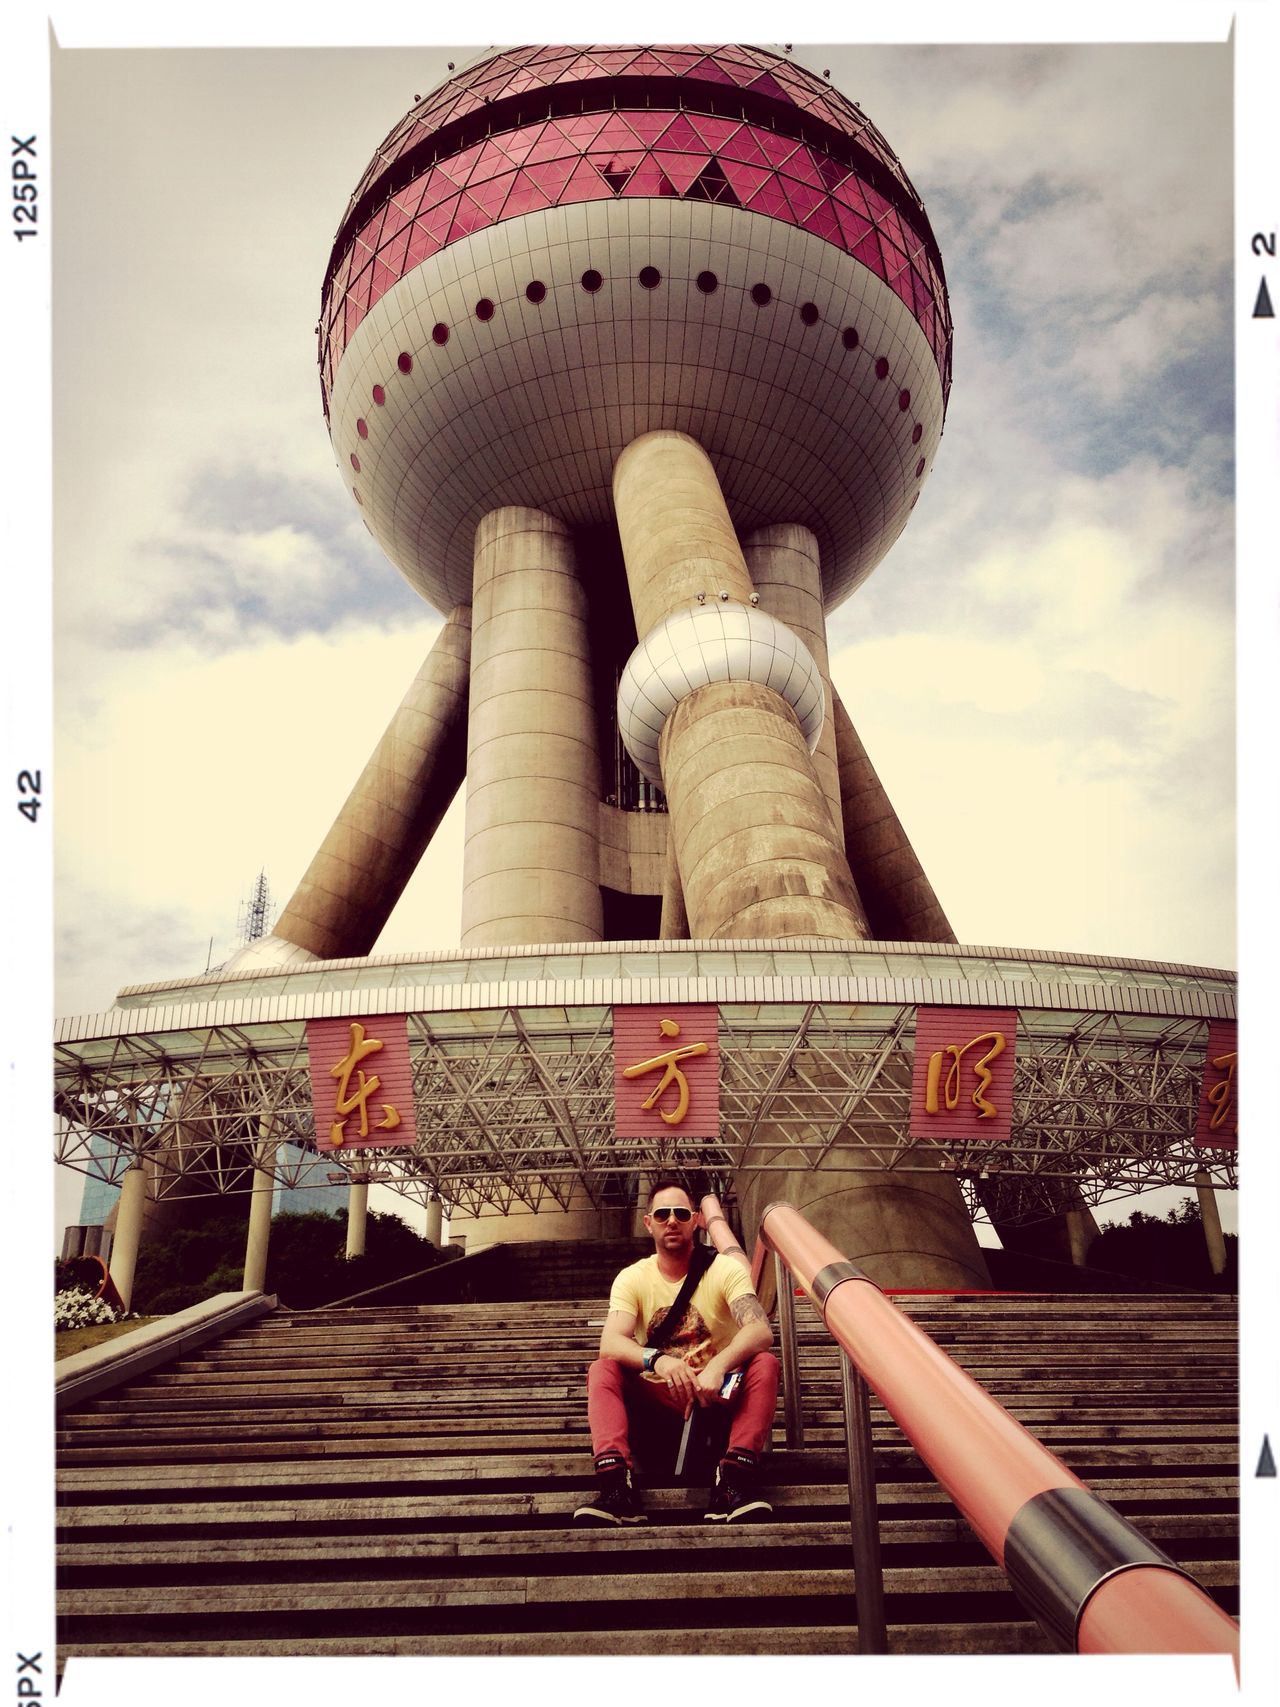 东方明珠塔 | Oriental Pearl Tower